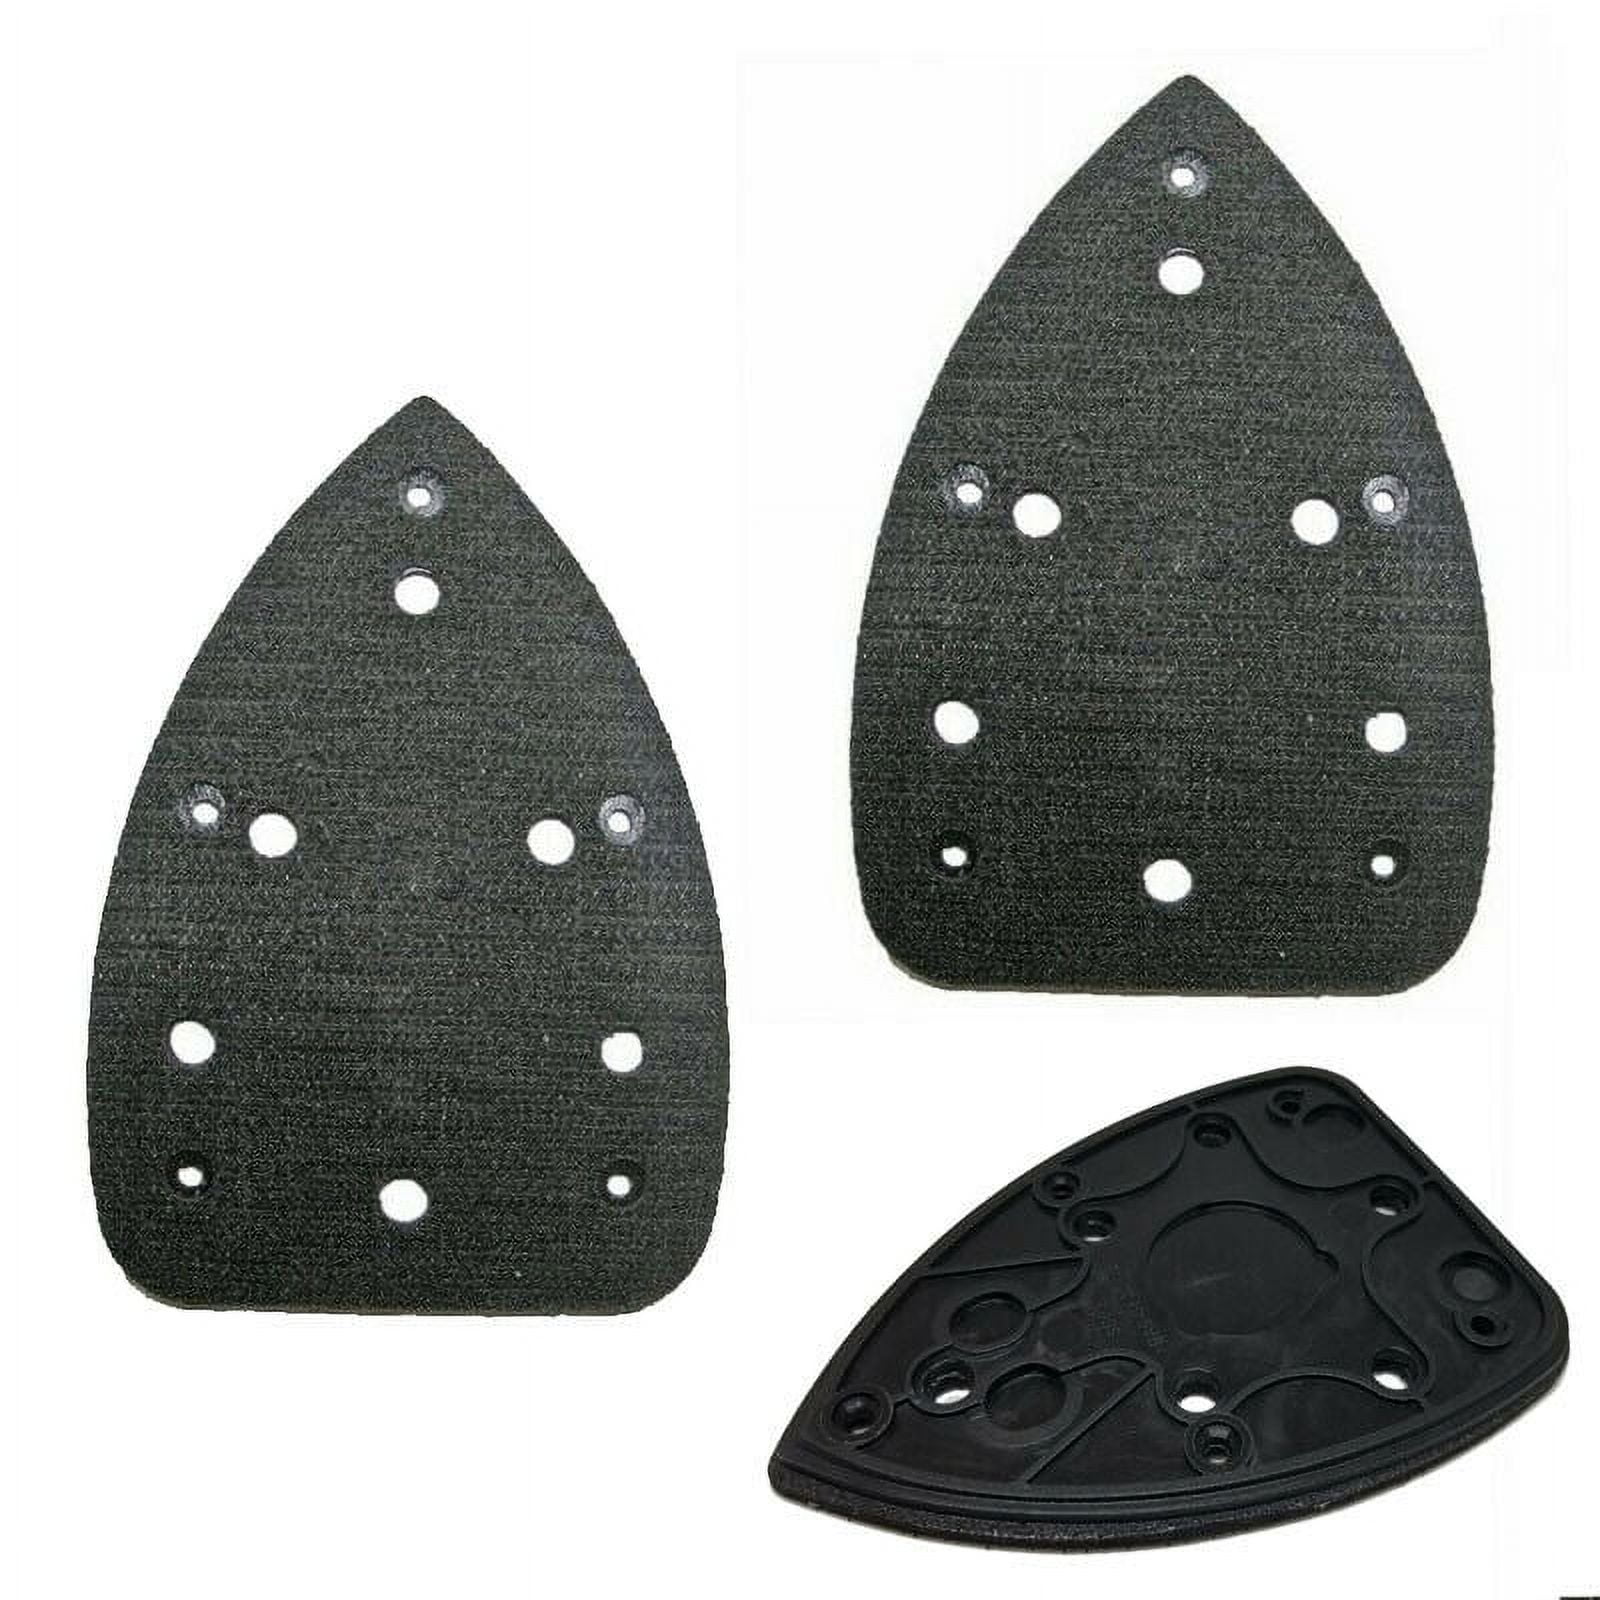 Nuolux Mouse Sander Sanding Pads Sandpaper Pad Detail Decker Sheets Replacement Black Discs, Size: 14 1889251